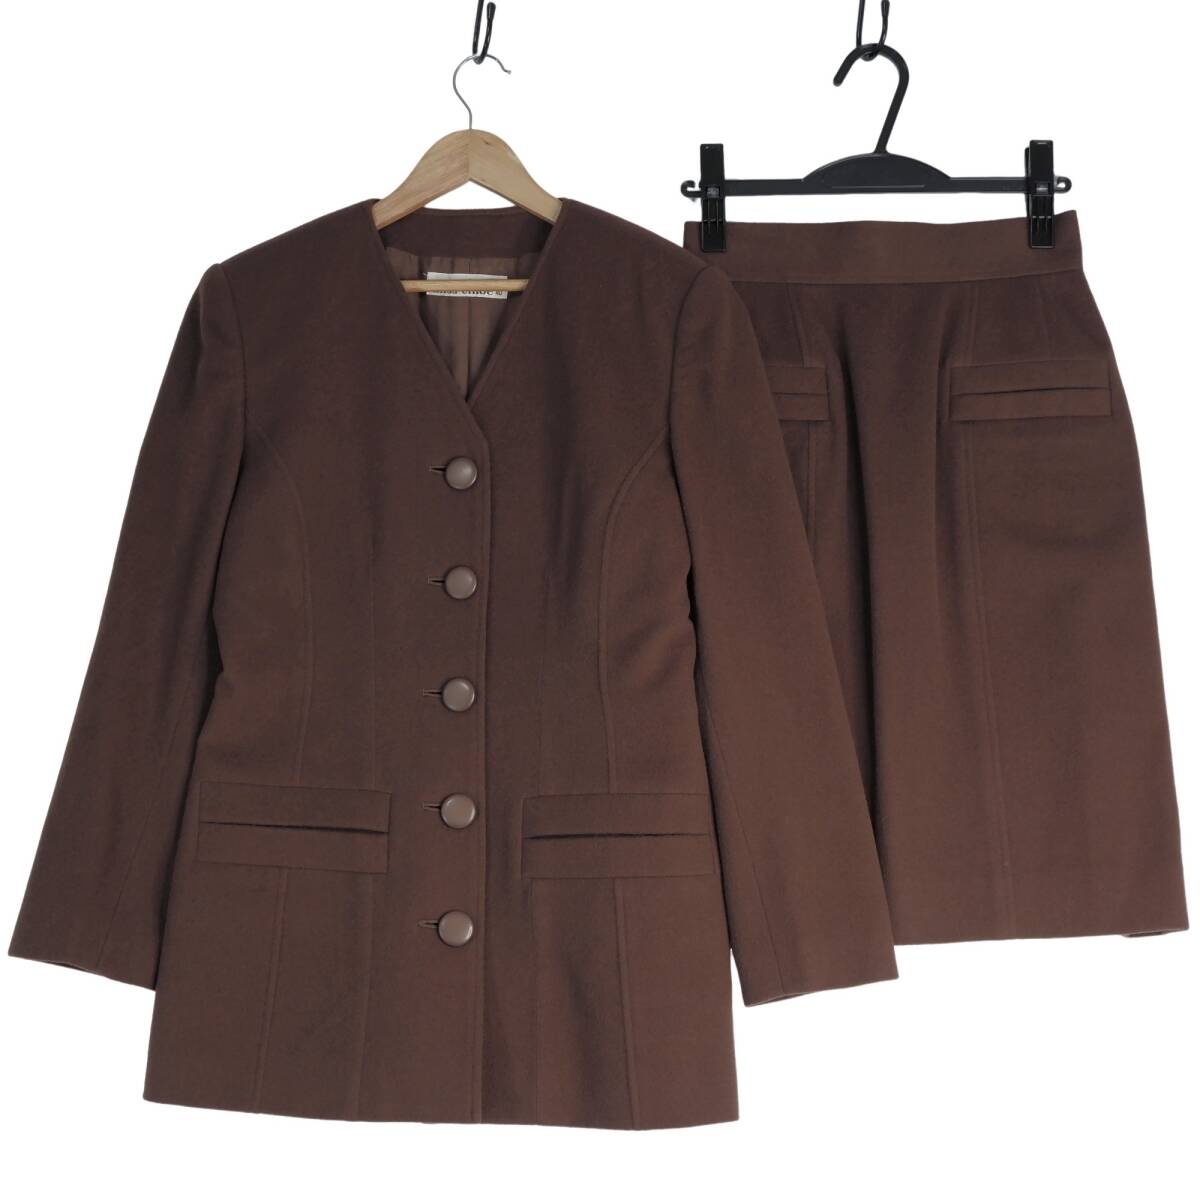 ◆美品 送料無料◆ miss chloe ミス クロエ ウール セットアップ スーツ ノーカラー ジャケット + スカート 茶 レディース 日本製 1824C0Aの画像1